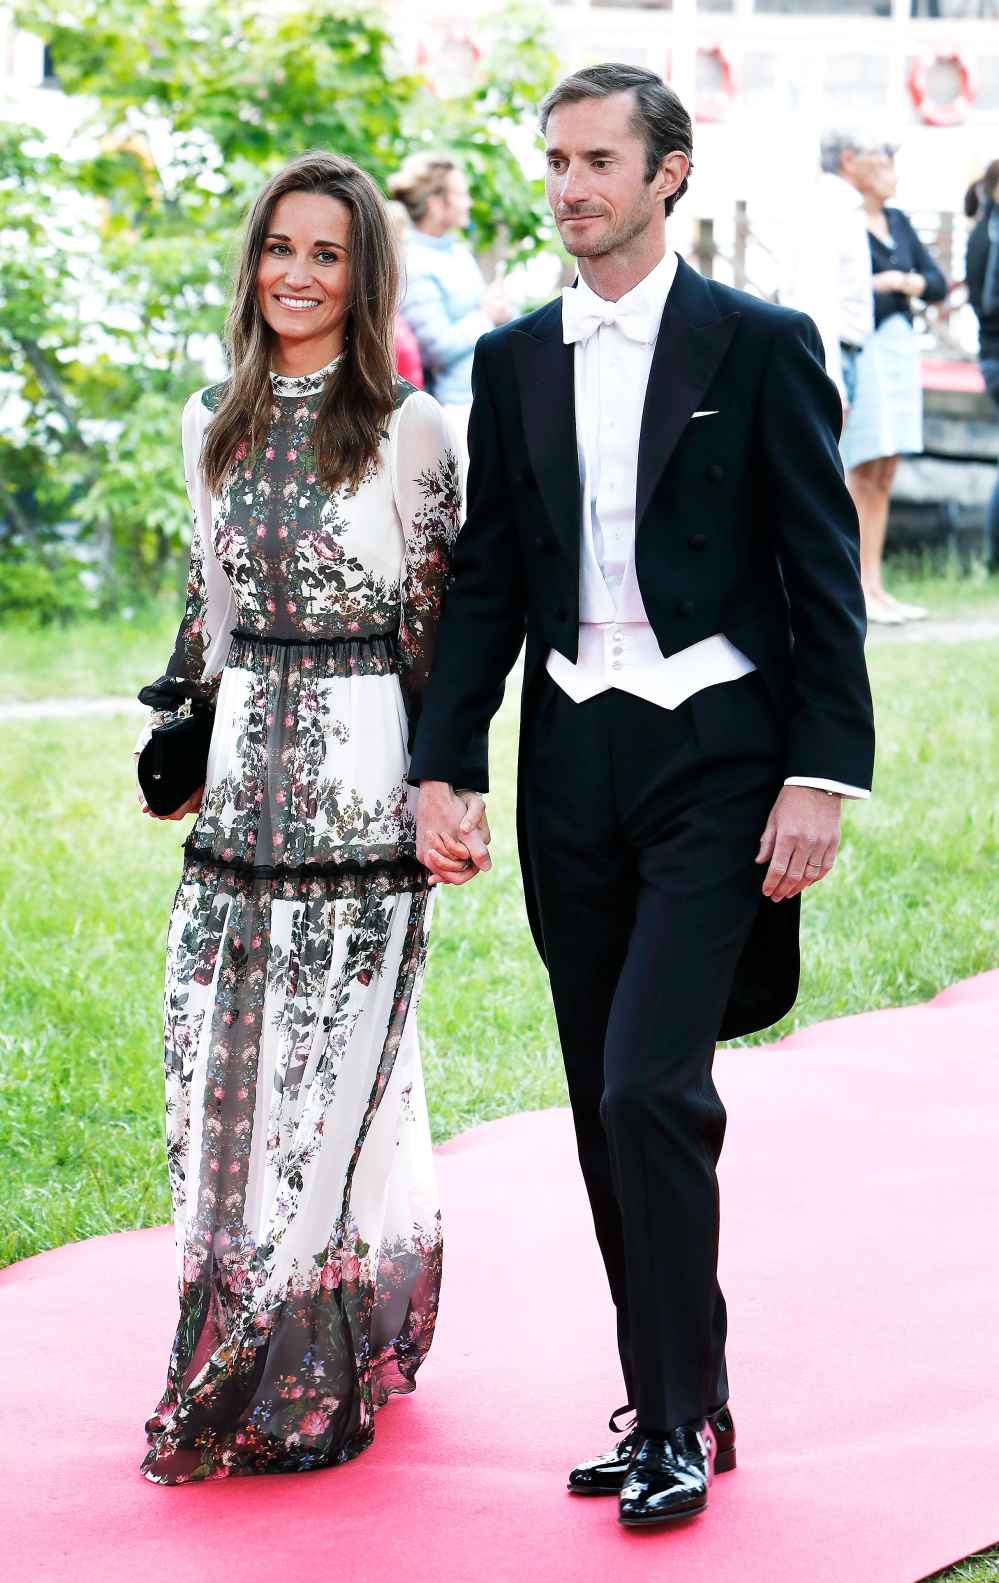 Pippa Middleton and husband James Matthews